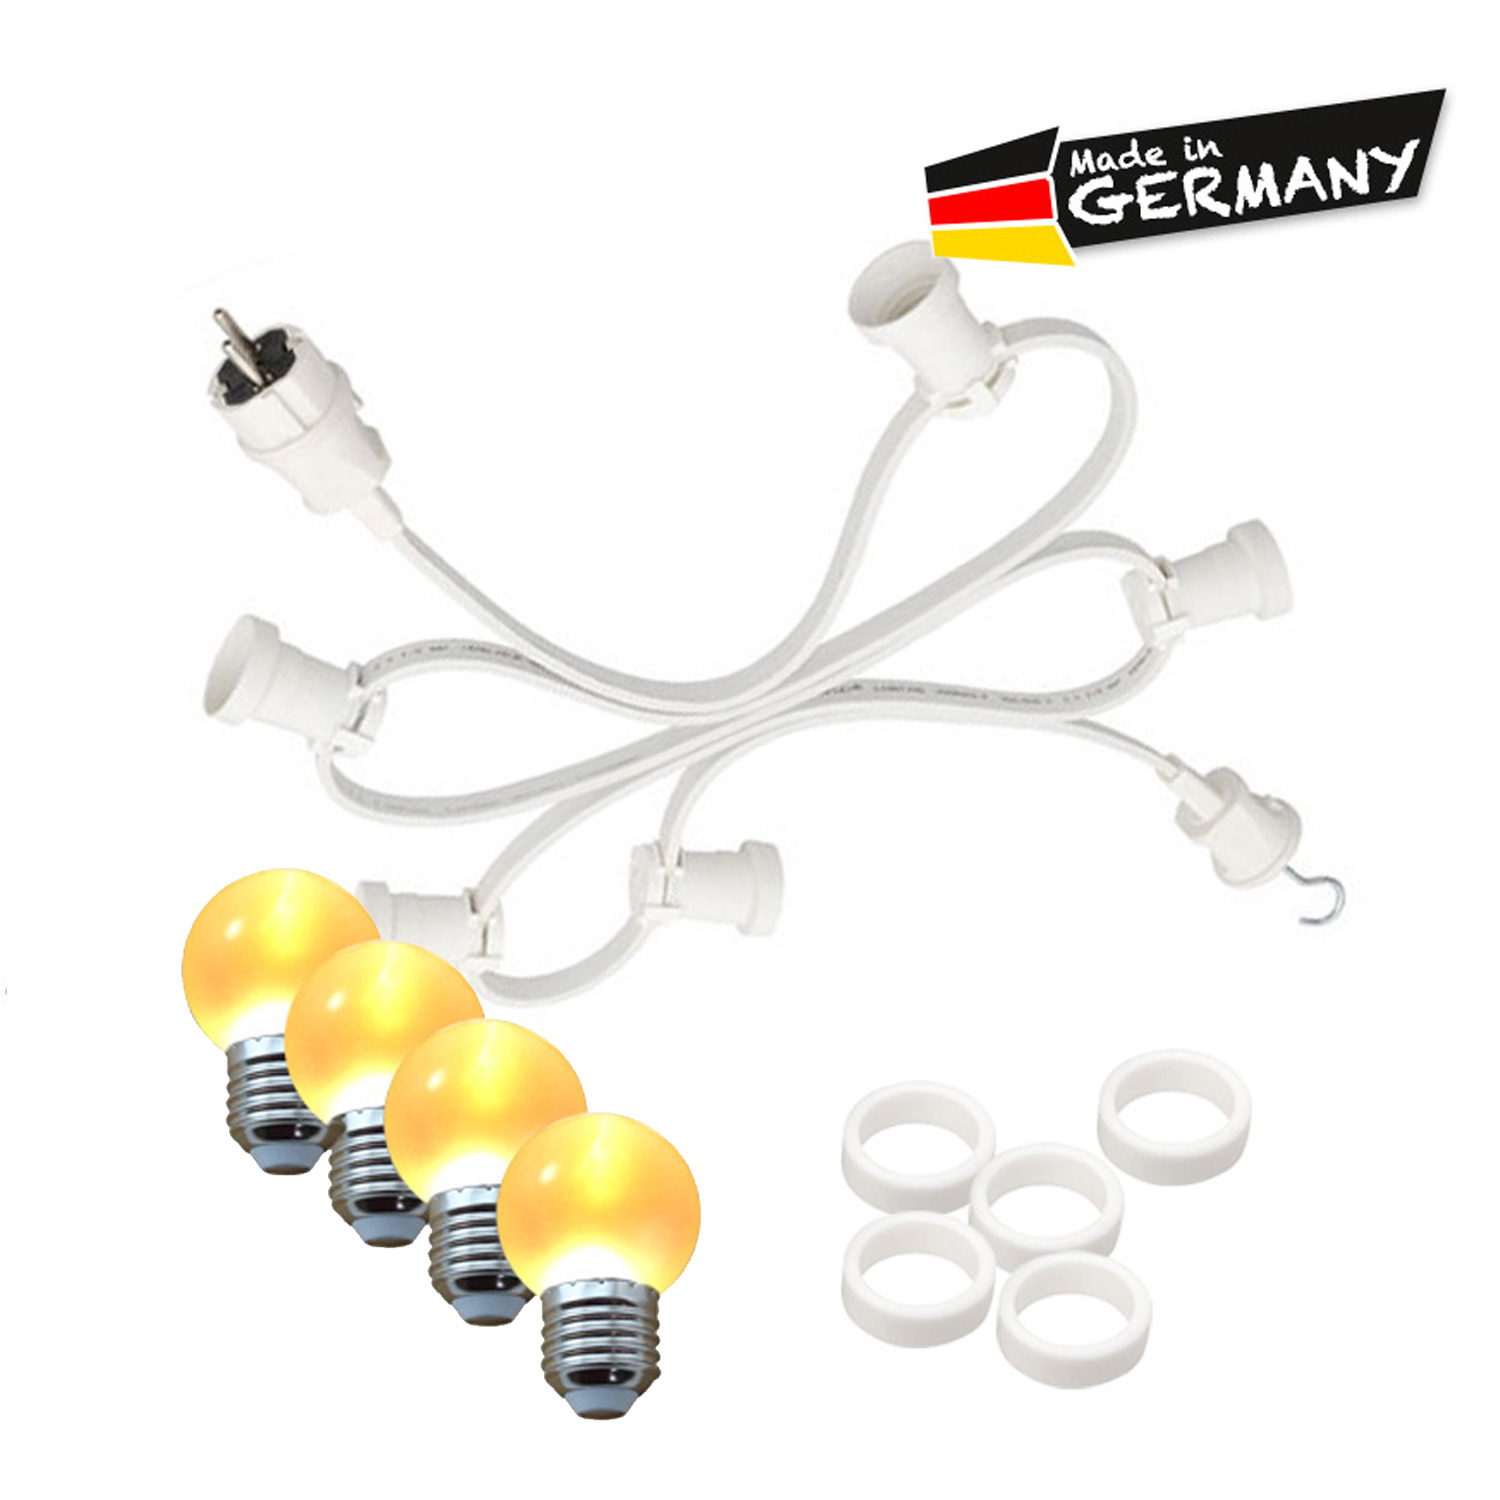 Illu-/Partylichterkette 5m - Außenlichterkette - Made in Germany - 10 x ultra-warmweiße LED Kugeln